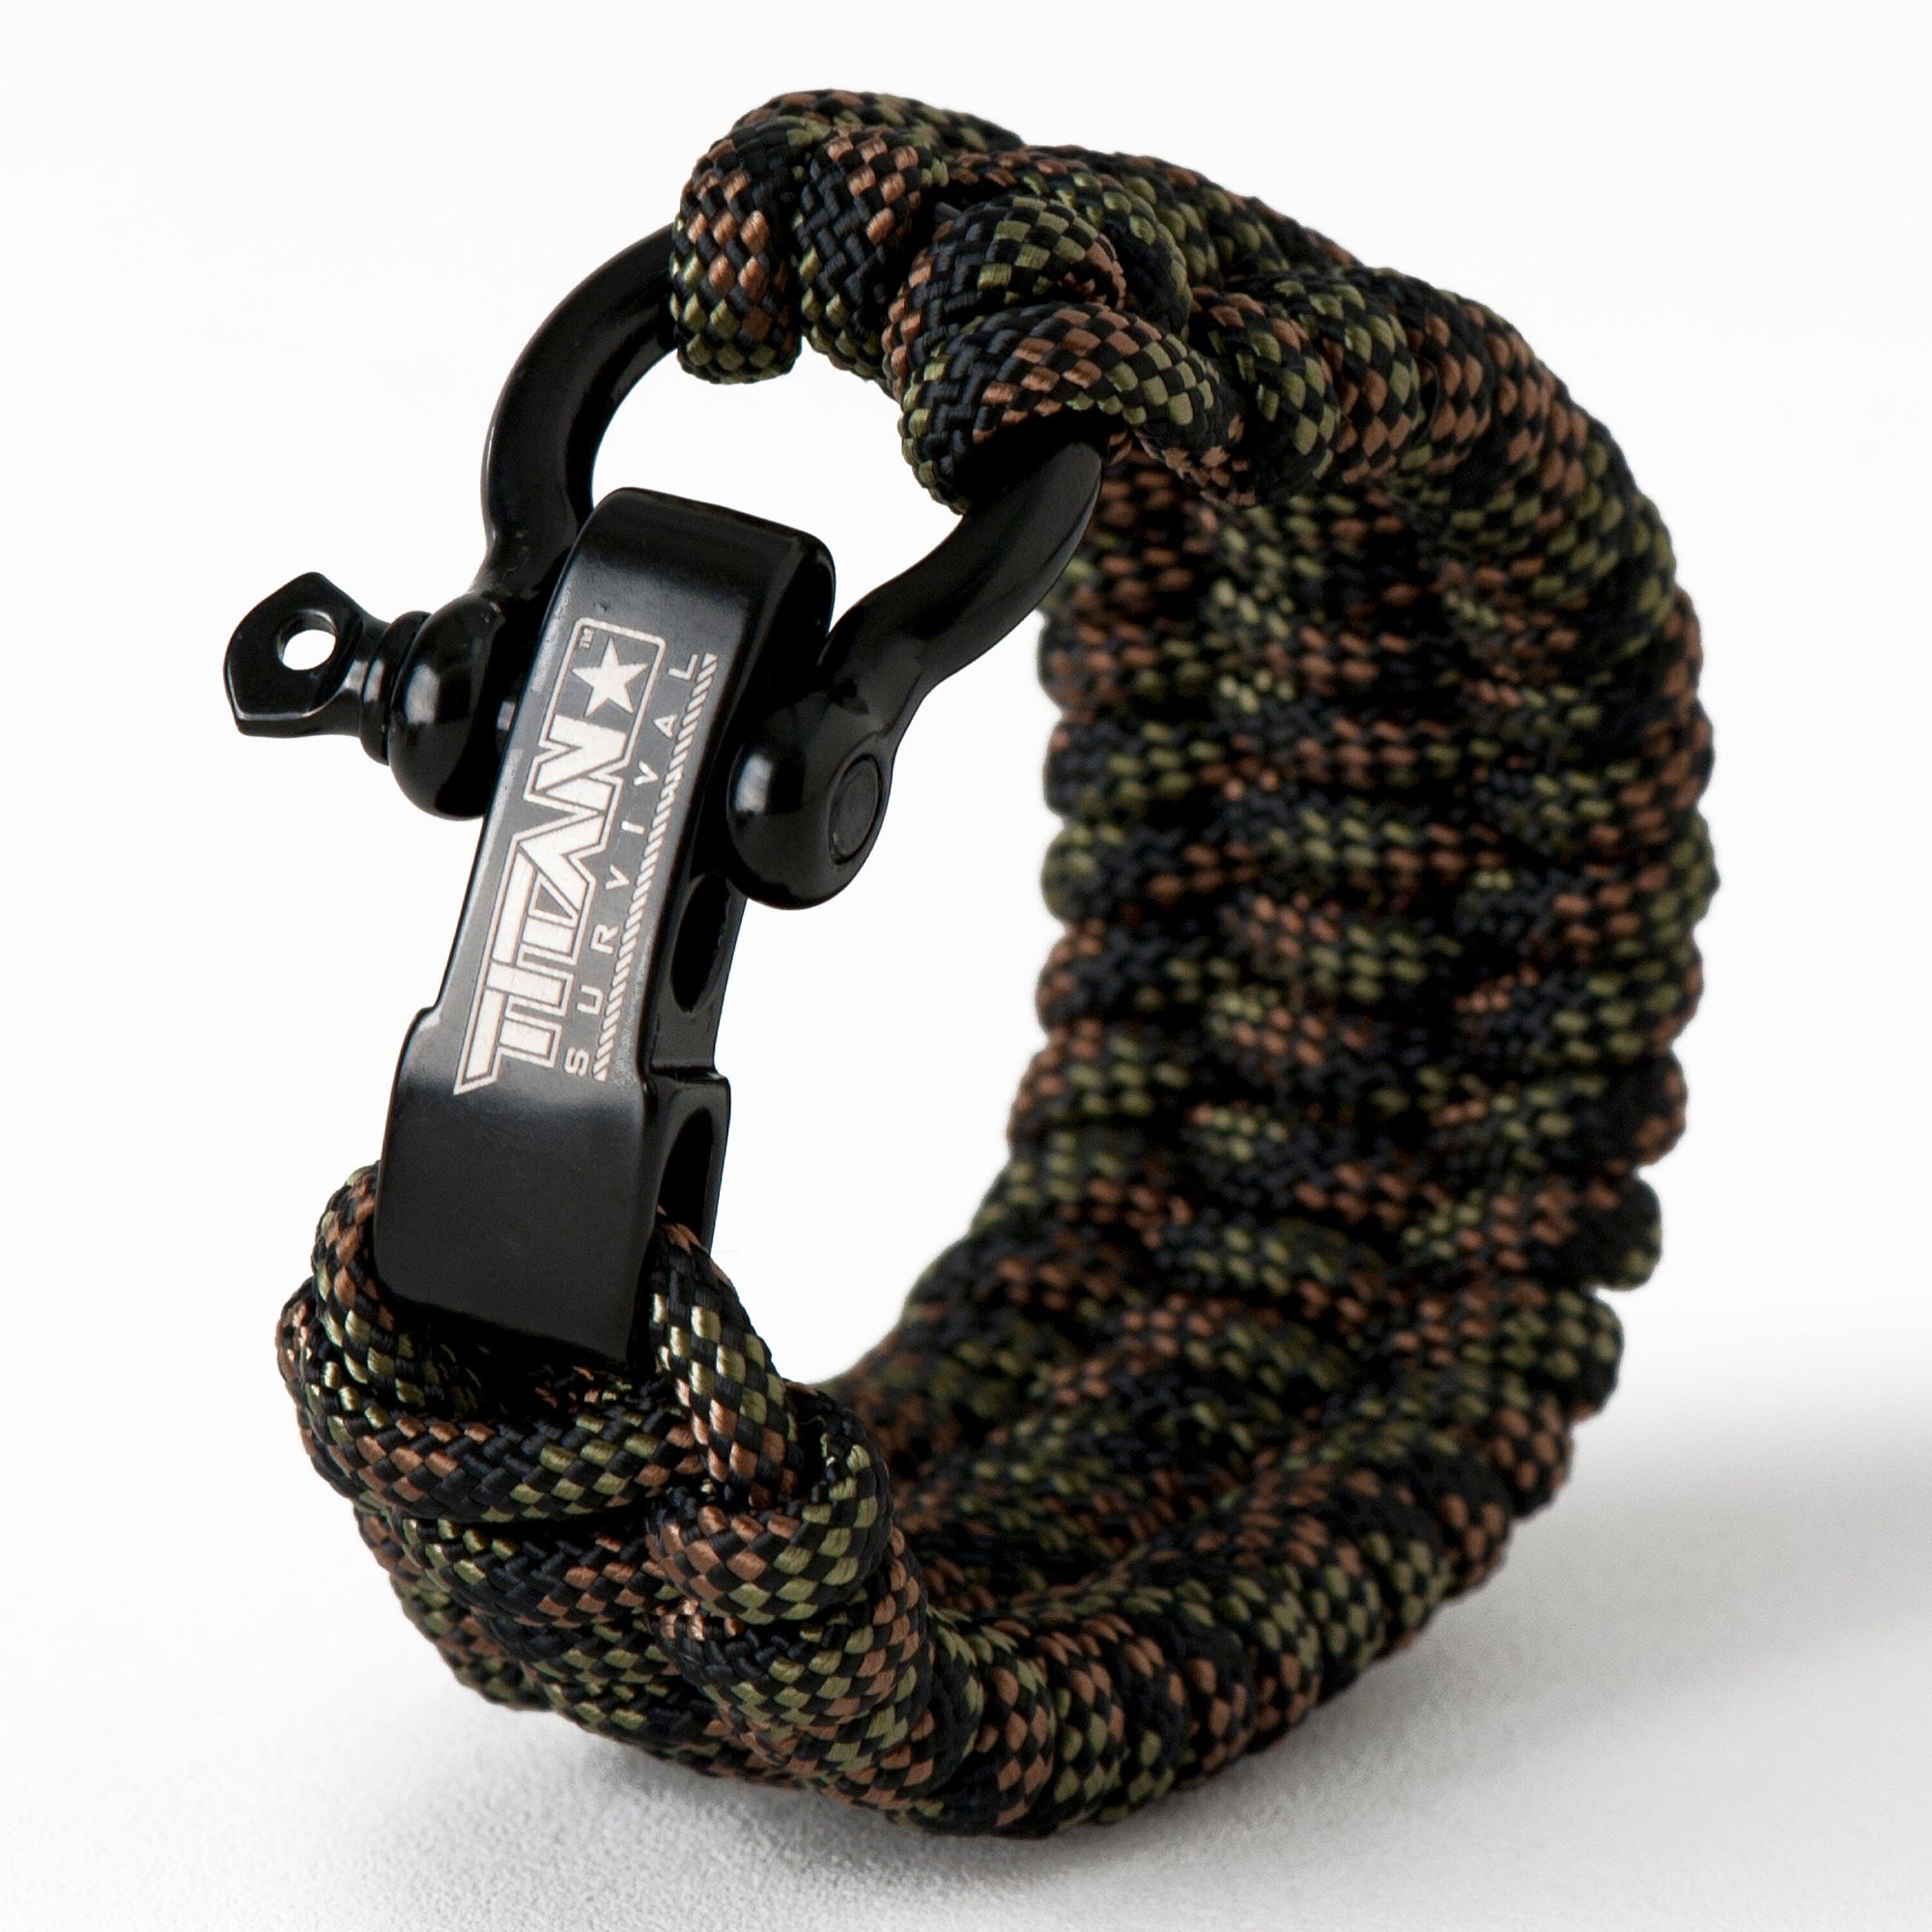 What is a Survival Bracelet?